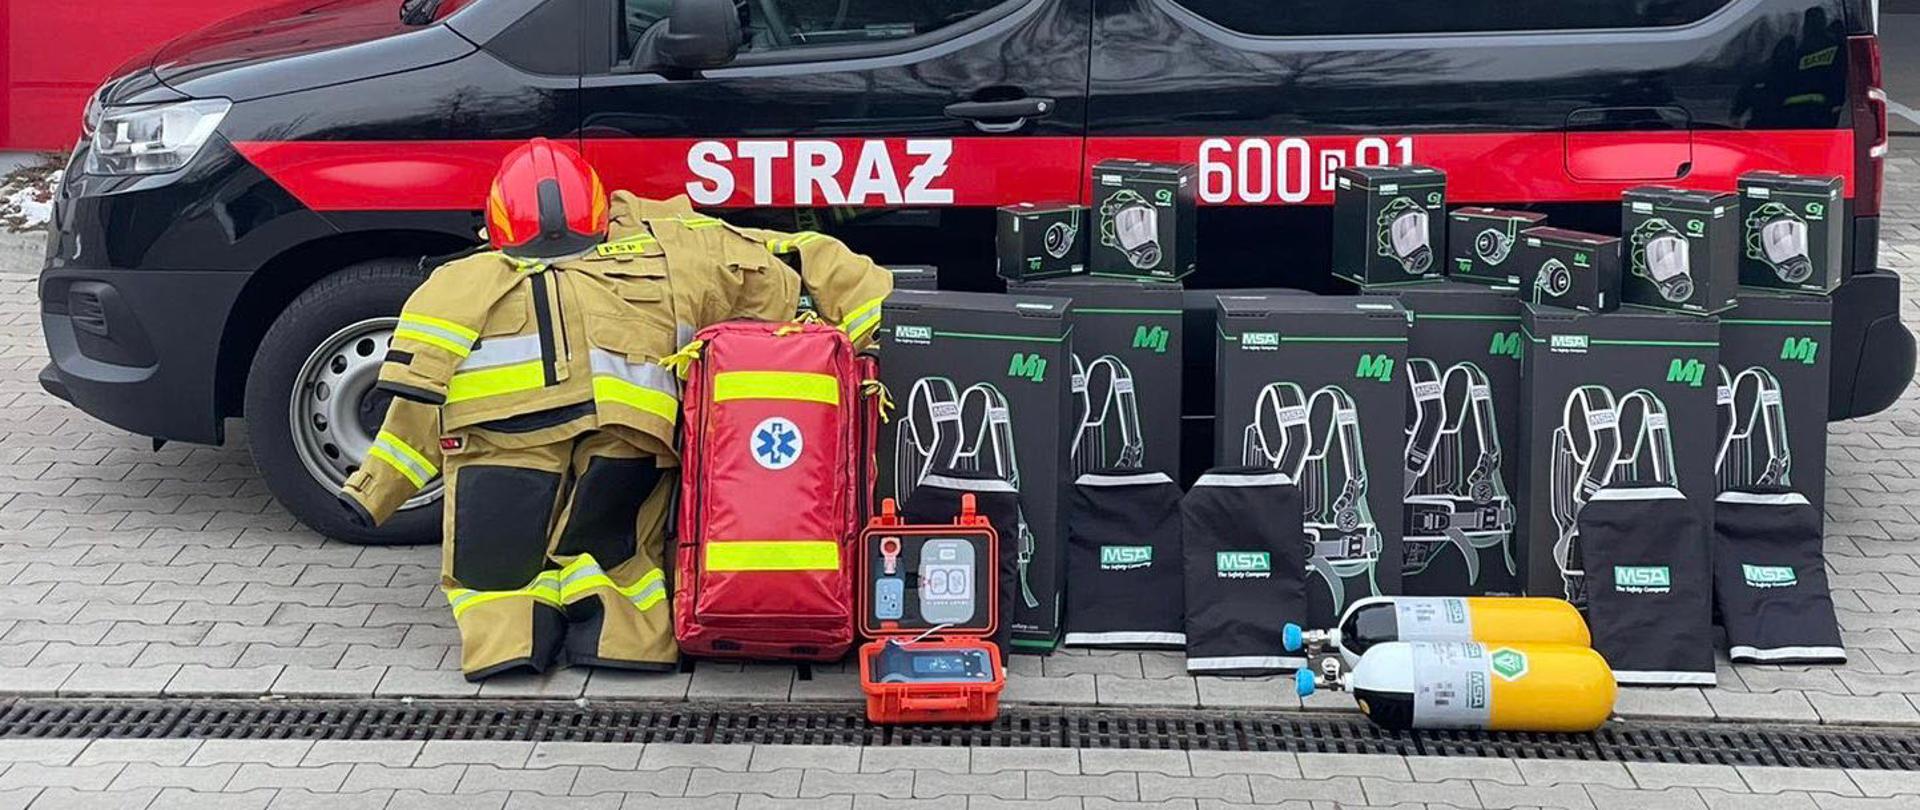 Na zdjęciu sprzęt na tle samochodu SLKw, aparaty OUO, butle, maski, AED torba R1 oraz ubranie specjalne i hełm strażacki